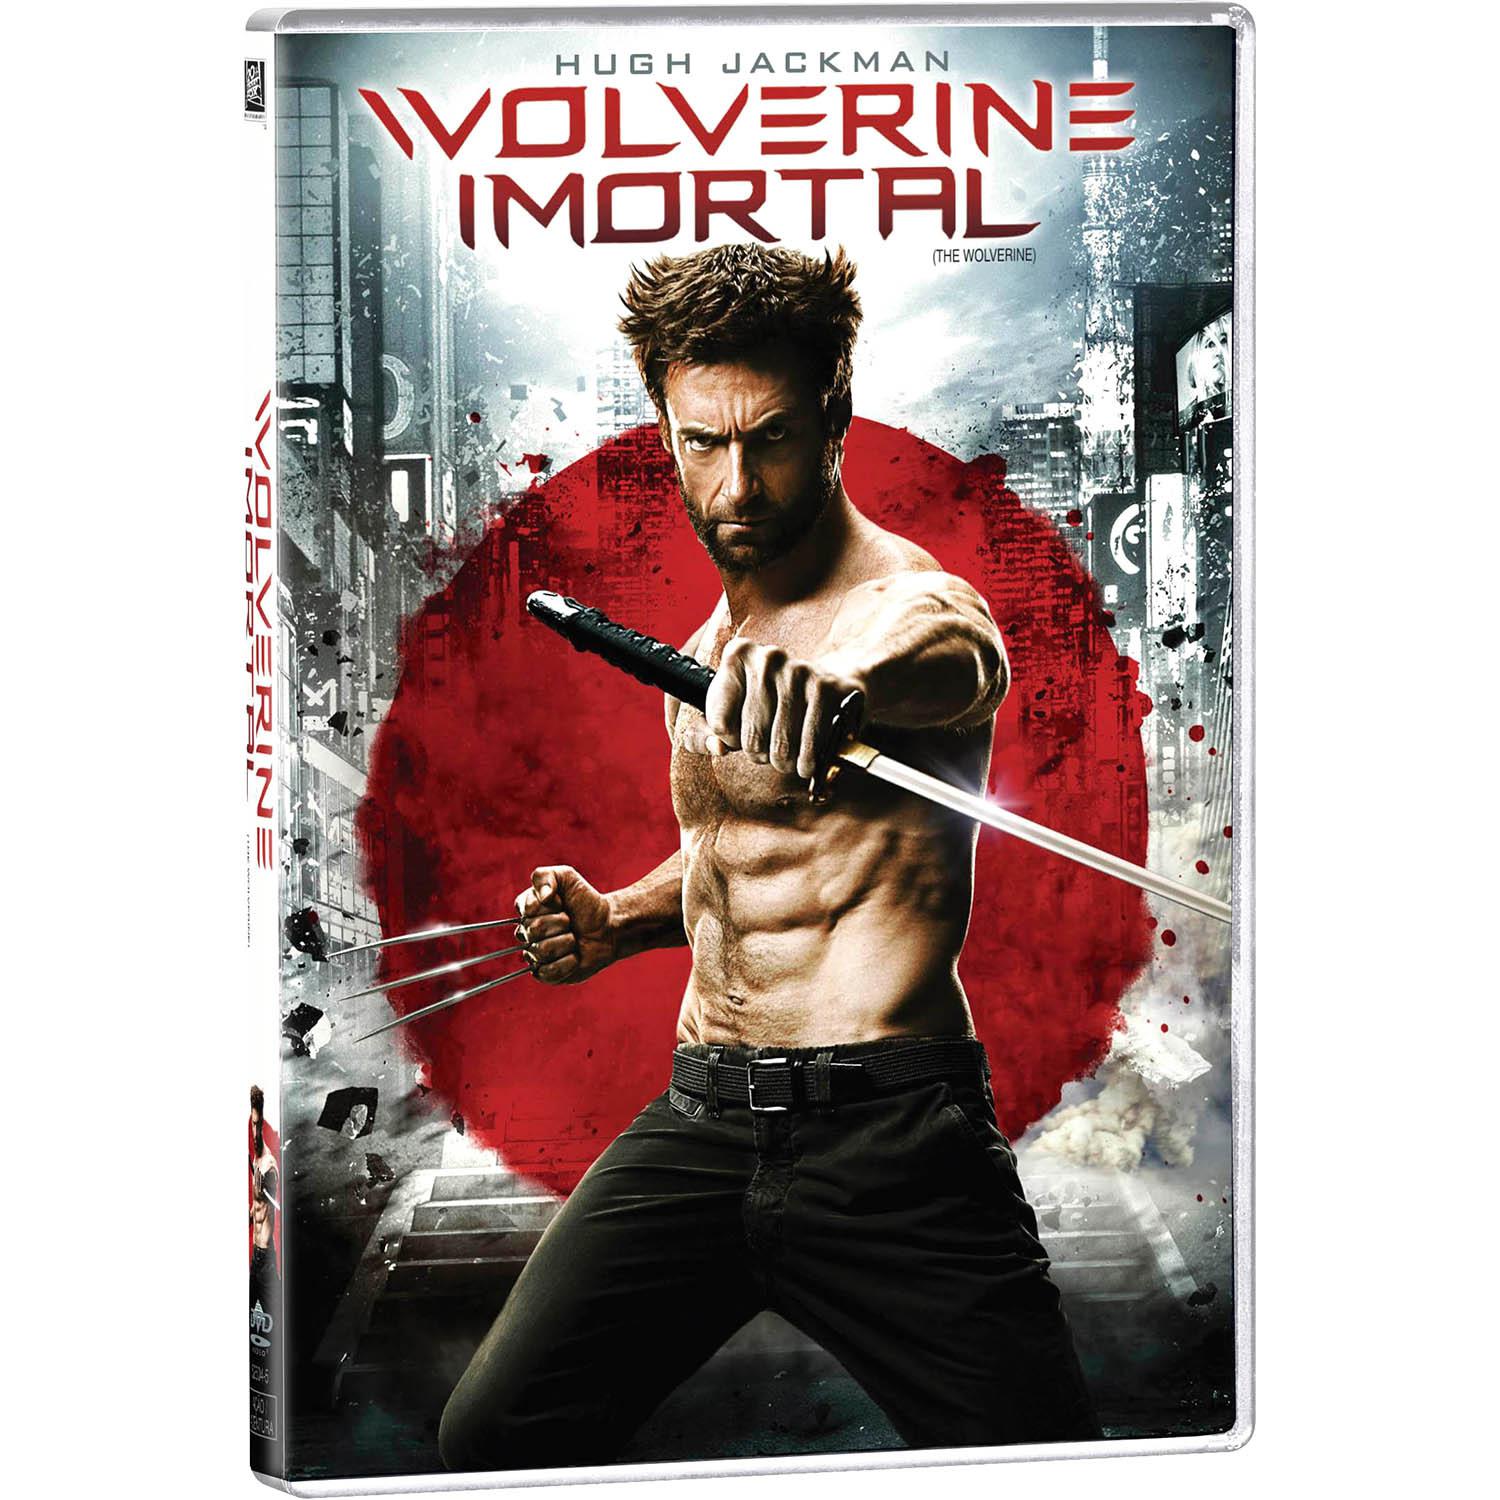 DVD - Wolverine Imortal é bom? Vale a pena?